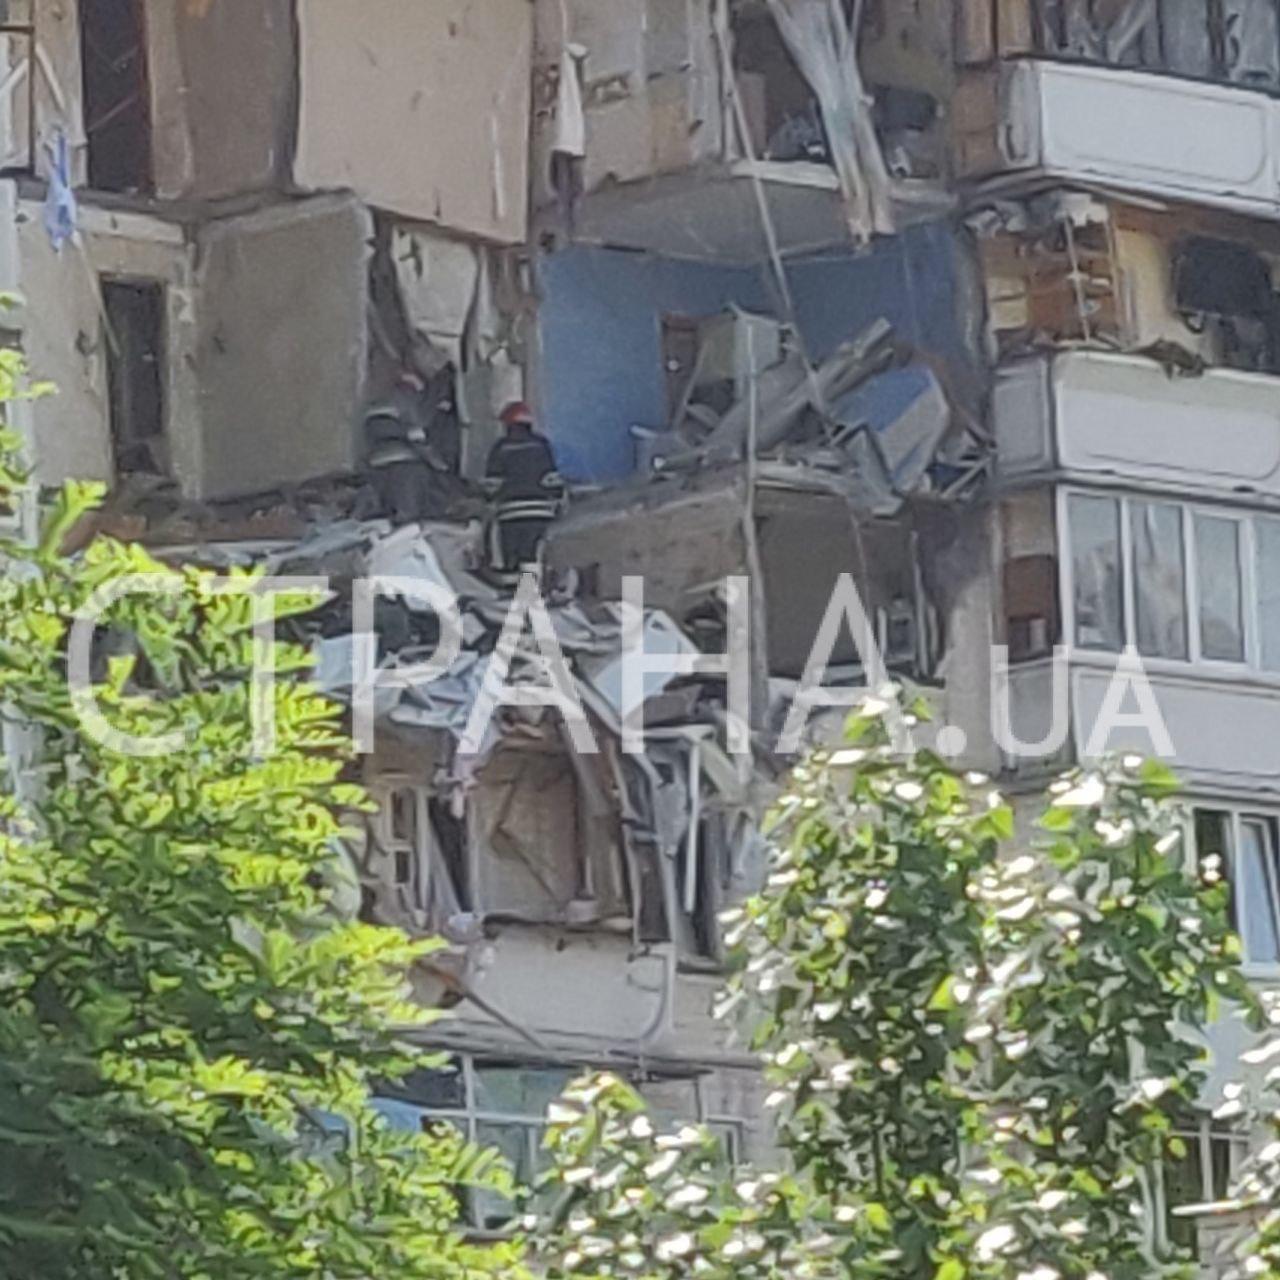 "Везде сильный запах газа". Появились фото и видео с места взрыва многоэтажки в Киеве. Фото: Страна